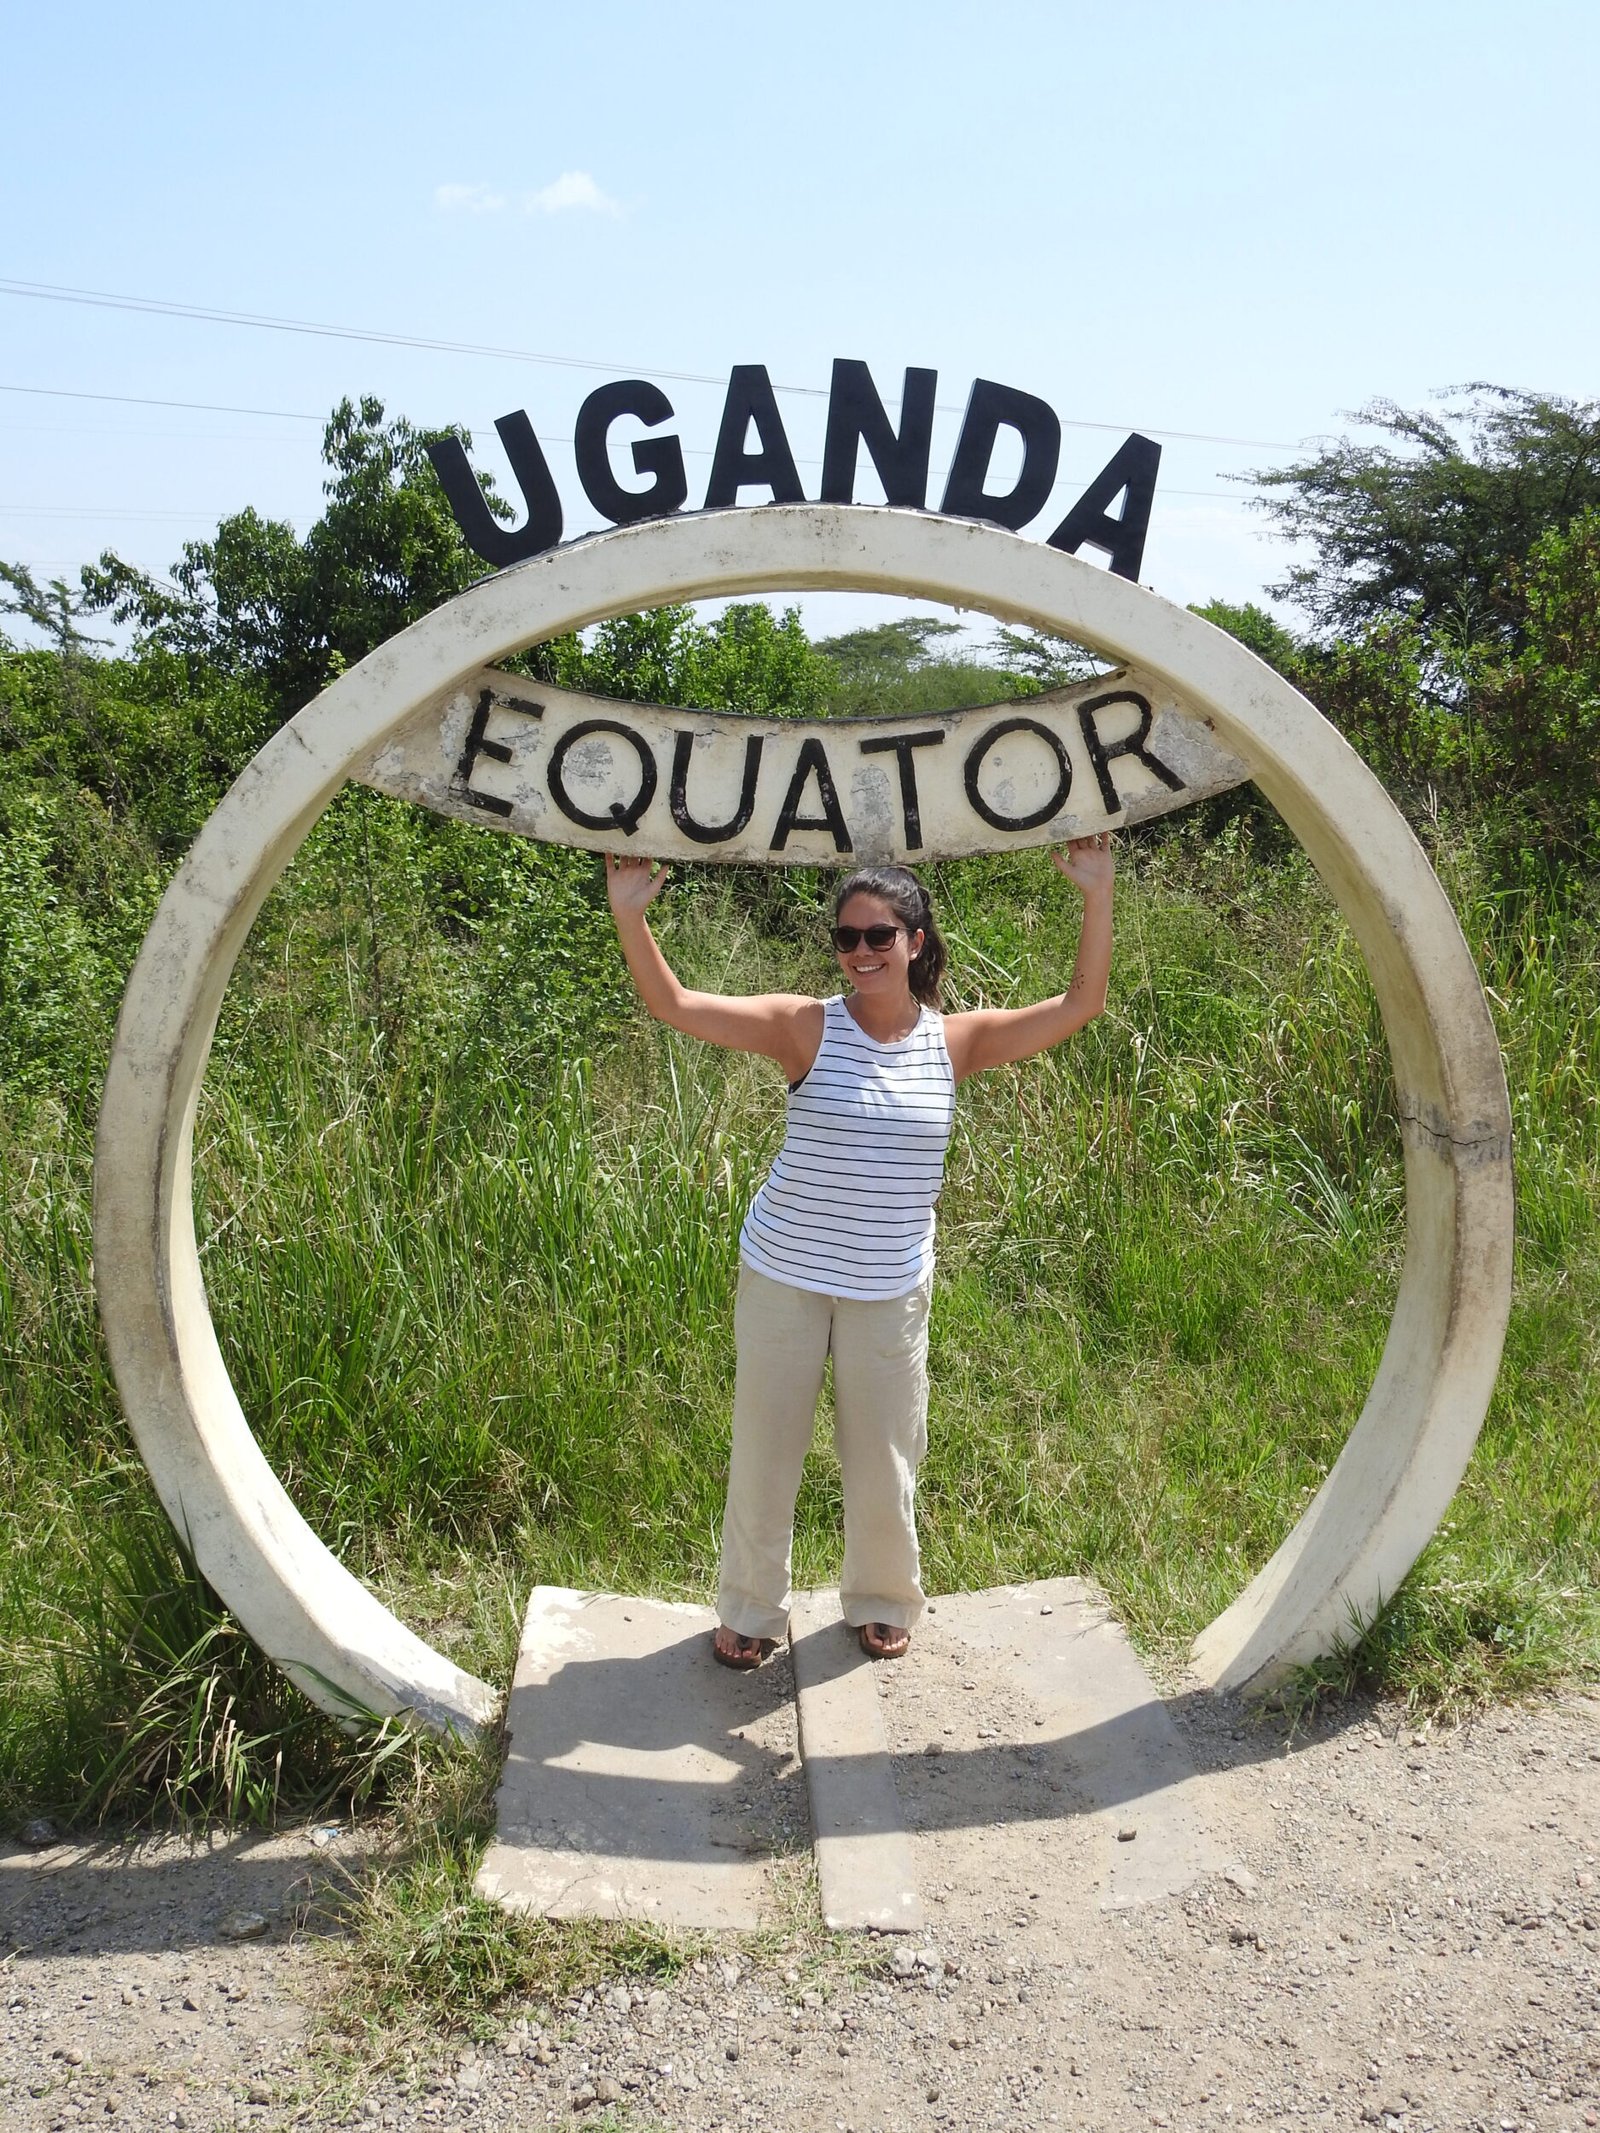 Uganda Equator - Kenya & Uganda Wildlife Adventure